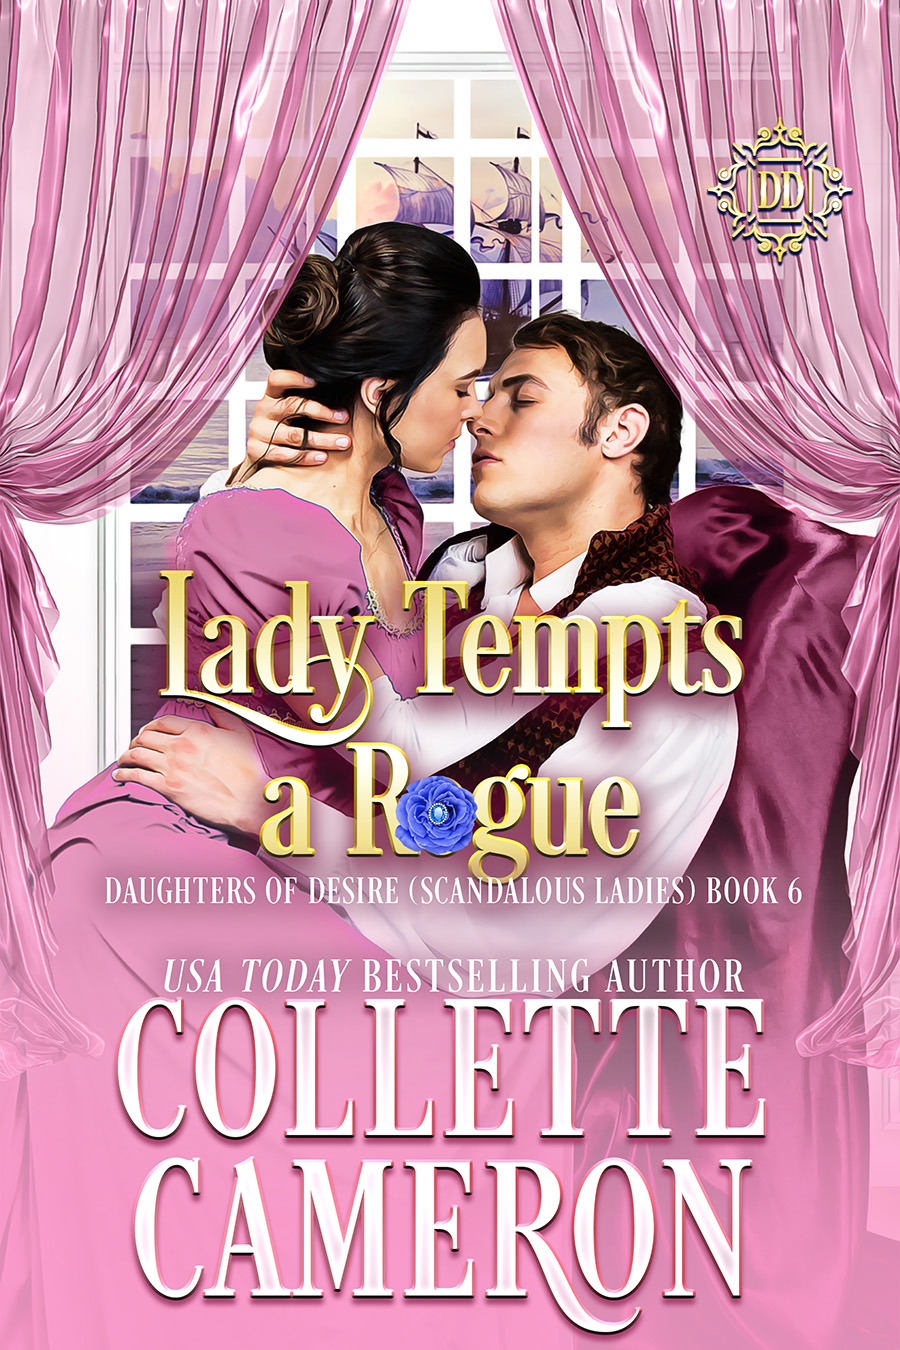 Collette's Historical Romances 18